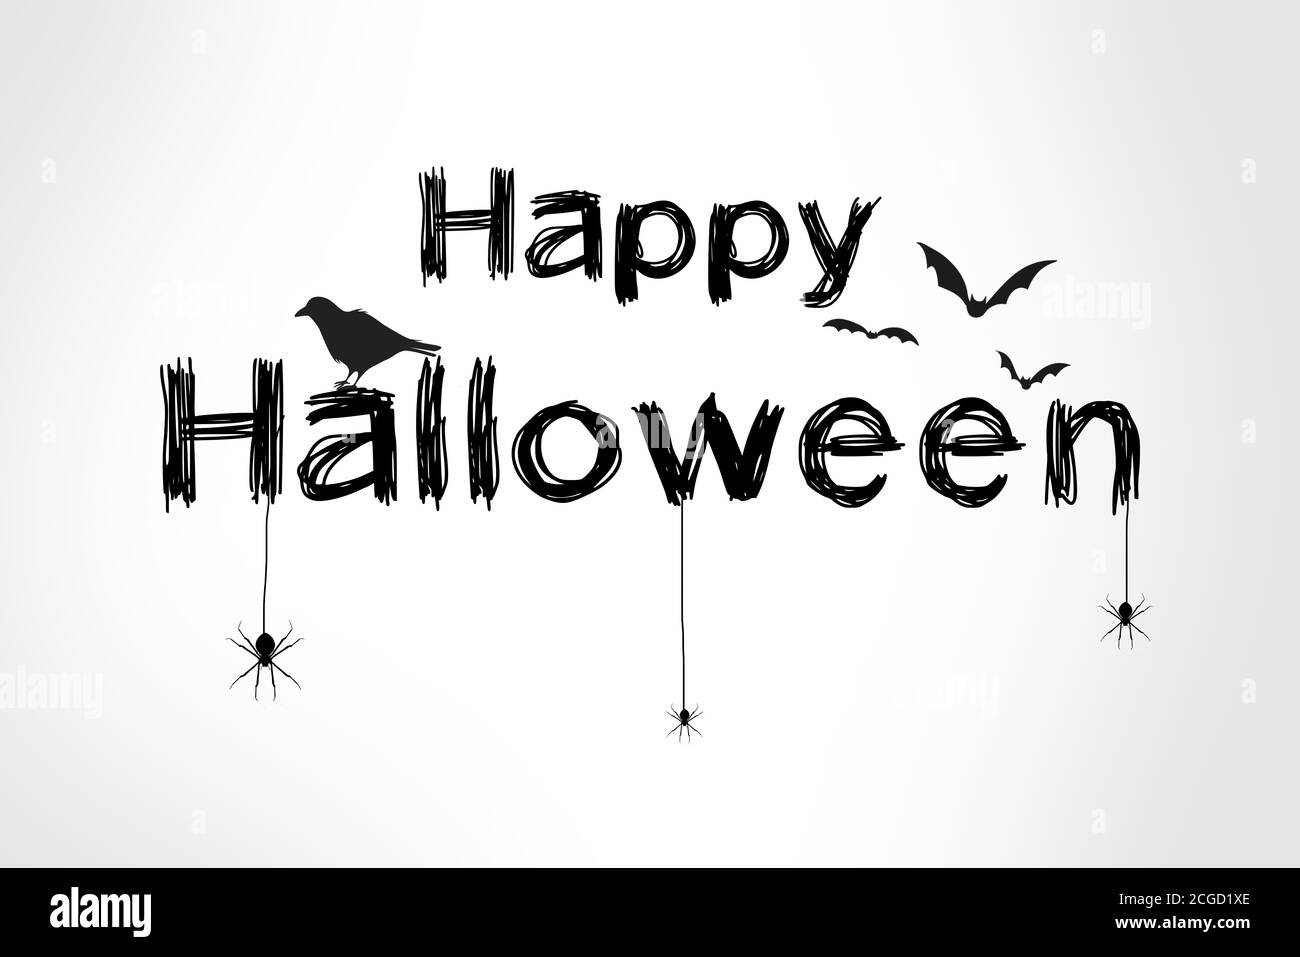 Happy halloween texte noir sur carte avec araignées, corbeau et chauves-souris. Illustration sur fond blanc dégradé Banque D'Images